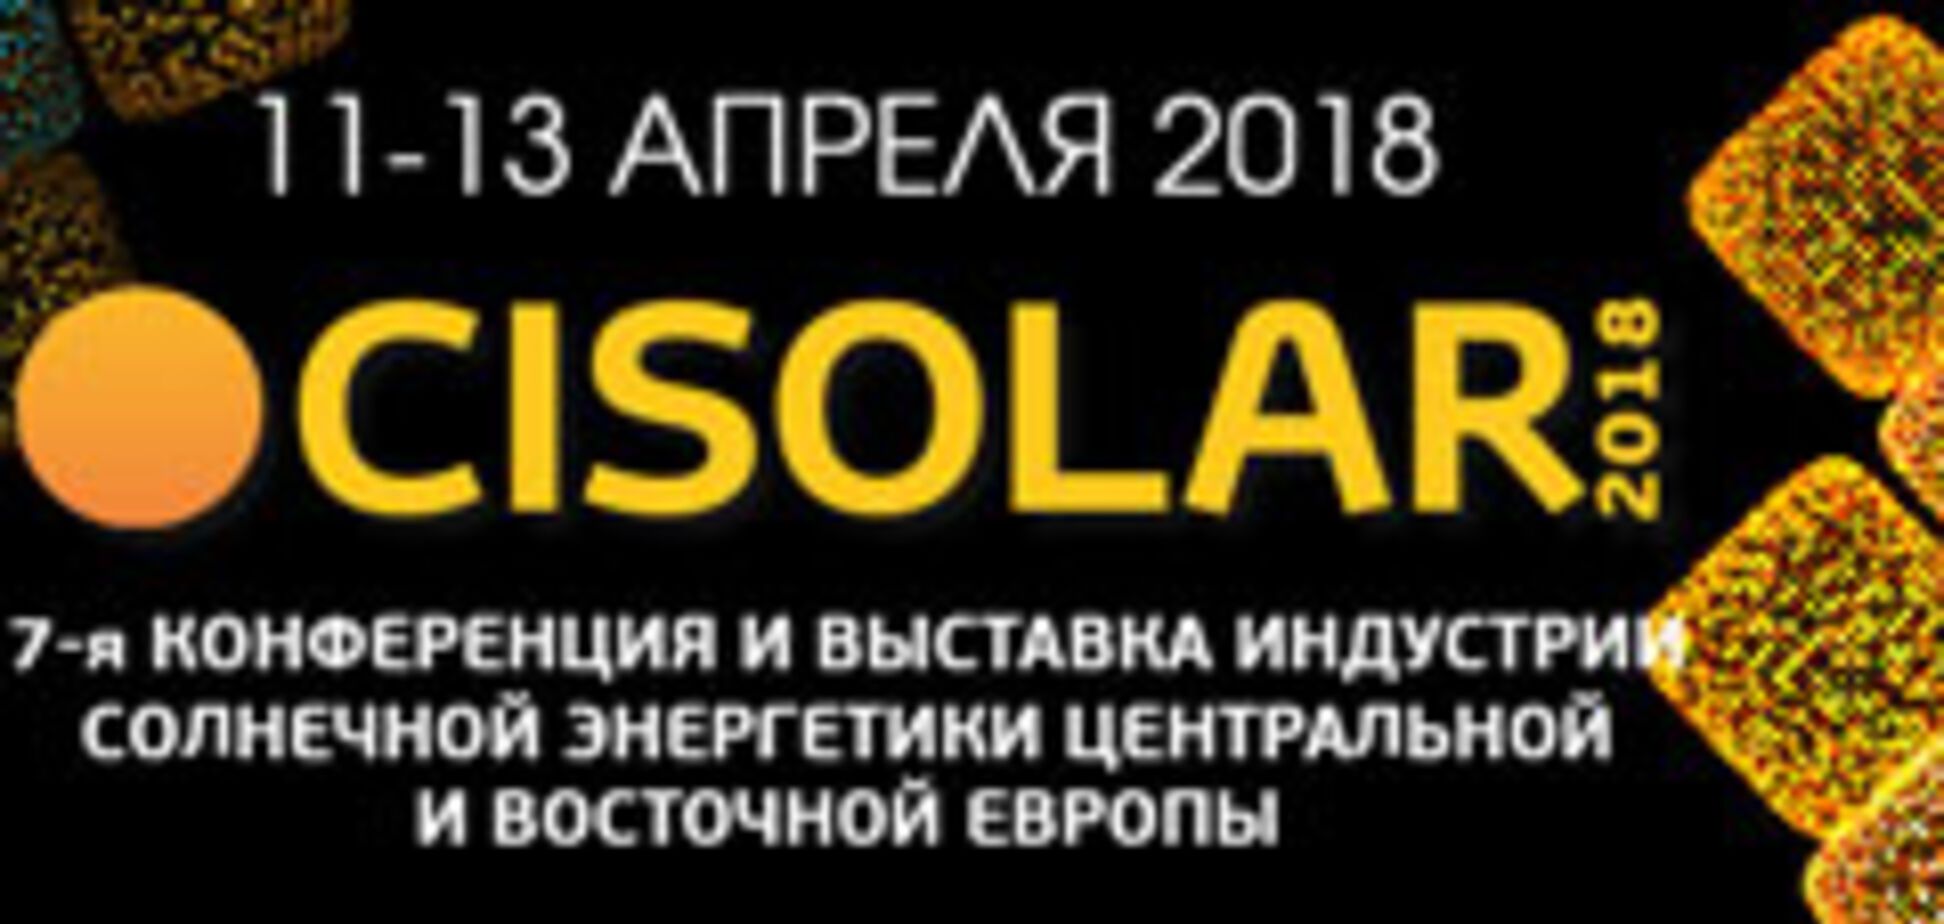 CISOLAR-2018 KYIV: С 11 по 13 апреля 2018 в Киеве пройдет самое масштабное отраслевое бизнес-мероприятие 